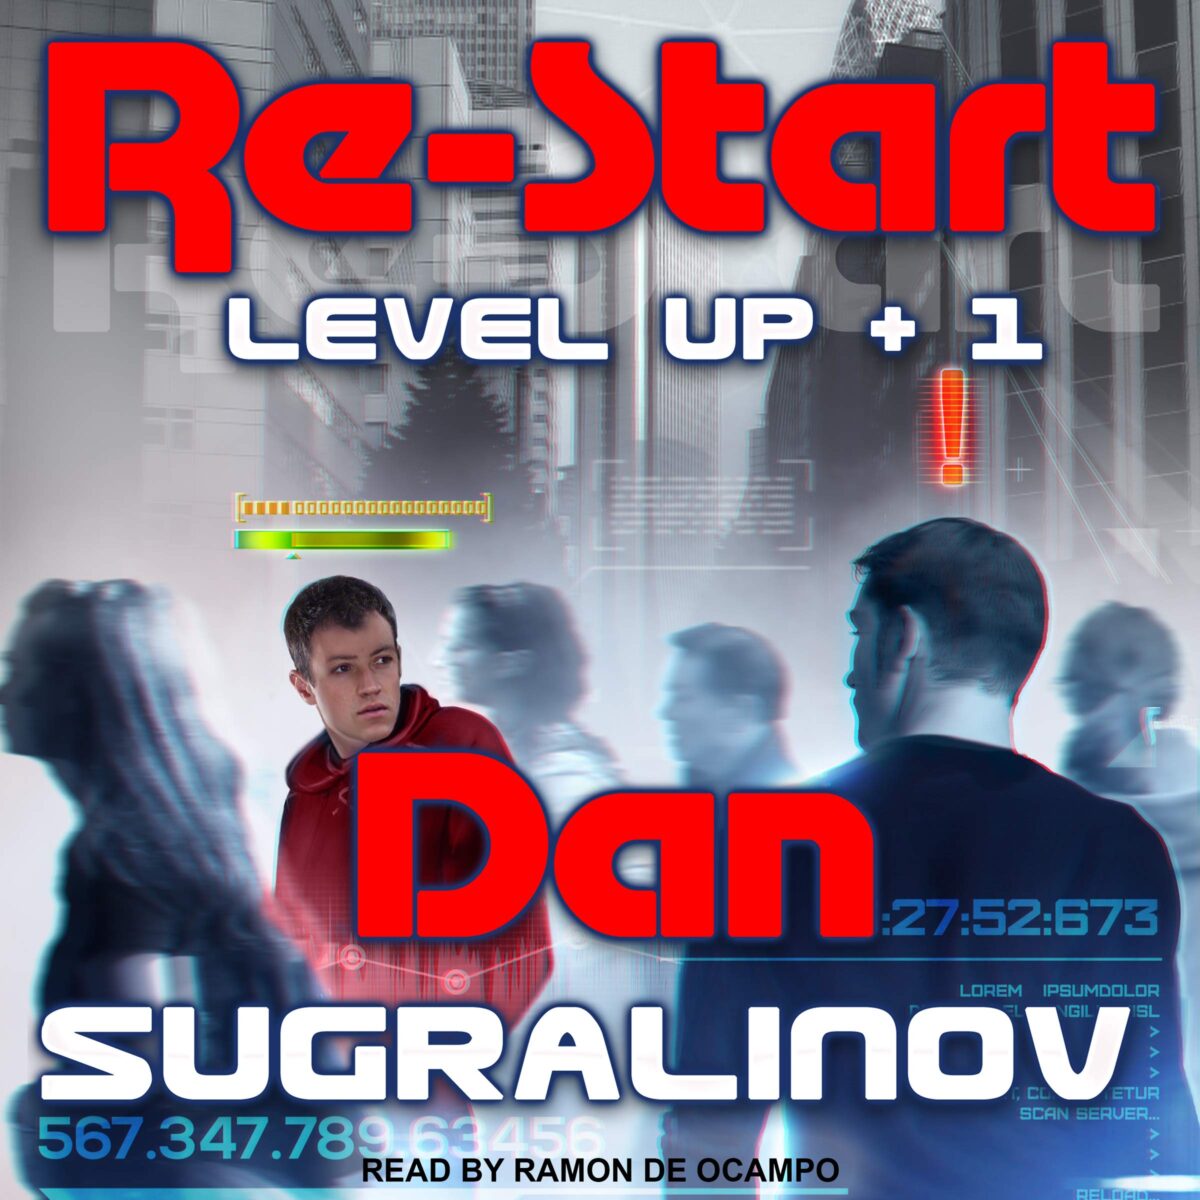 Level up Данияр Сугралинов. Сугралинов Данияр Level up испытание.